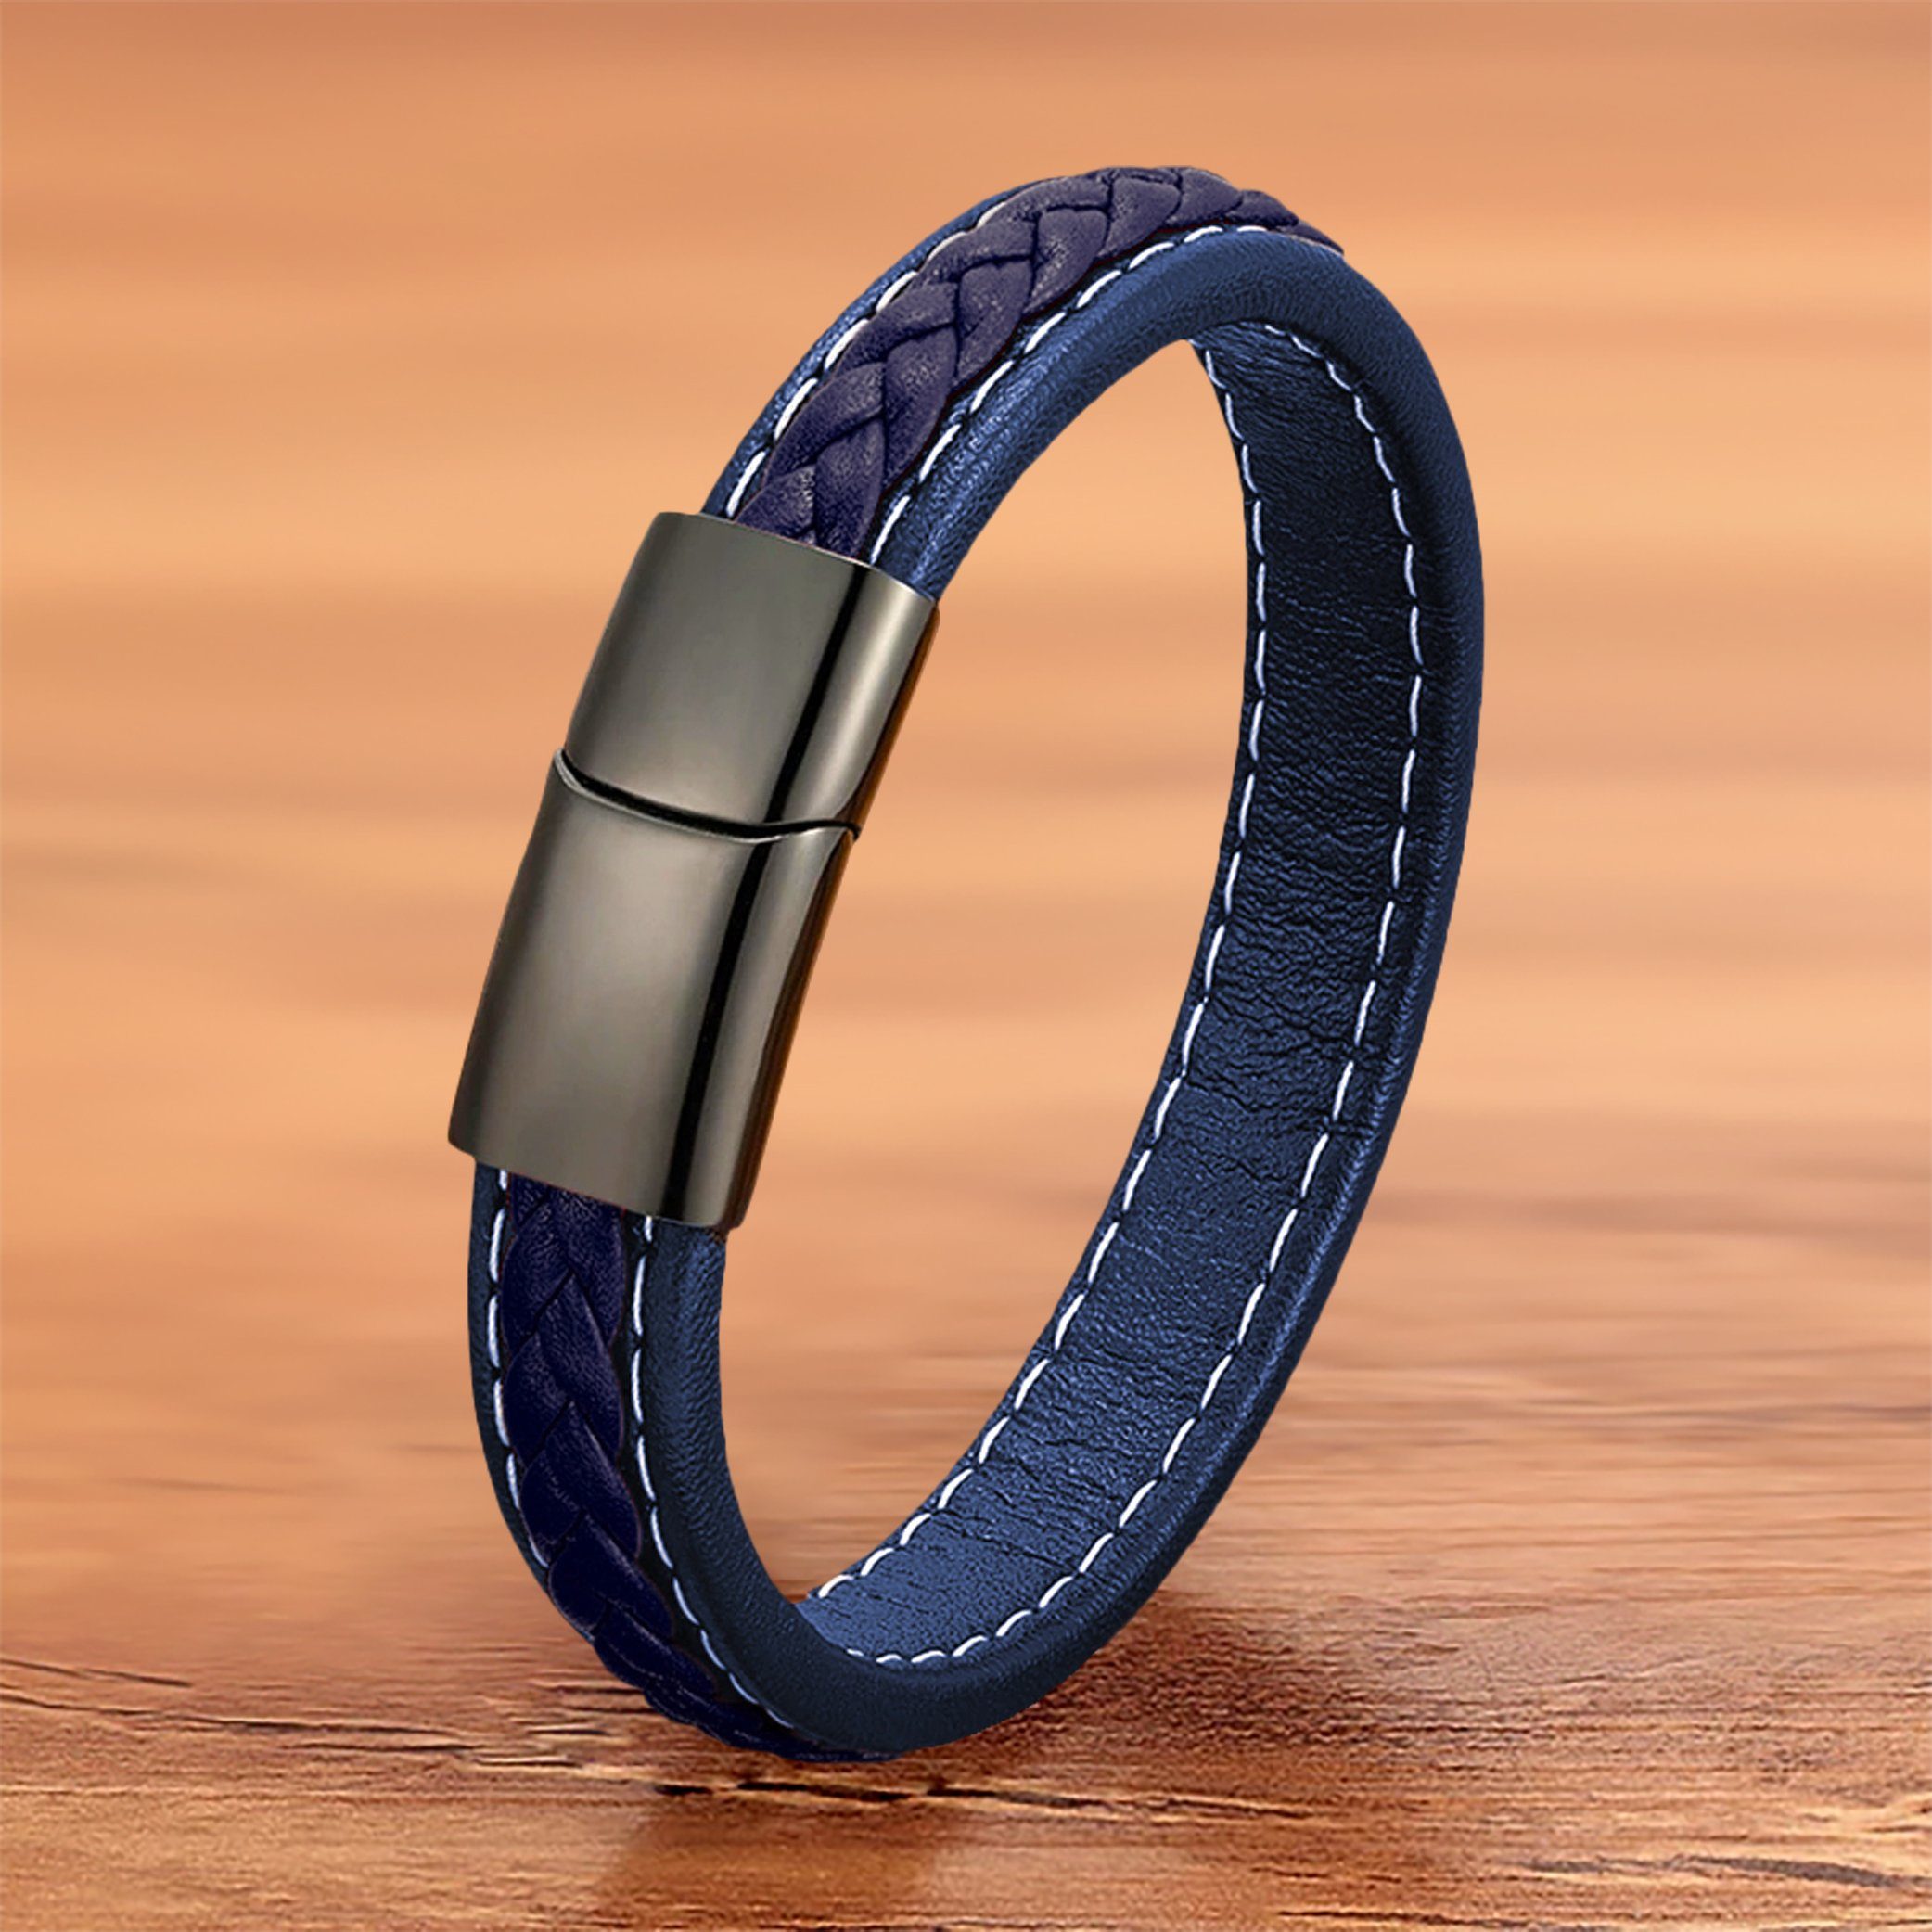 NAHLE Lederarmband elegantes Leder Armband blau geflochten (inkl. Schmuckbox), aus Leder, mit Magnetverschluss für ein sicheres verschließen